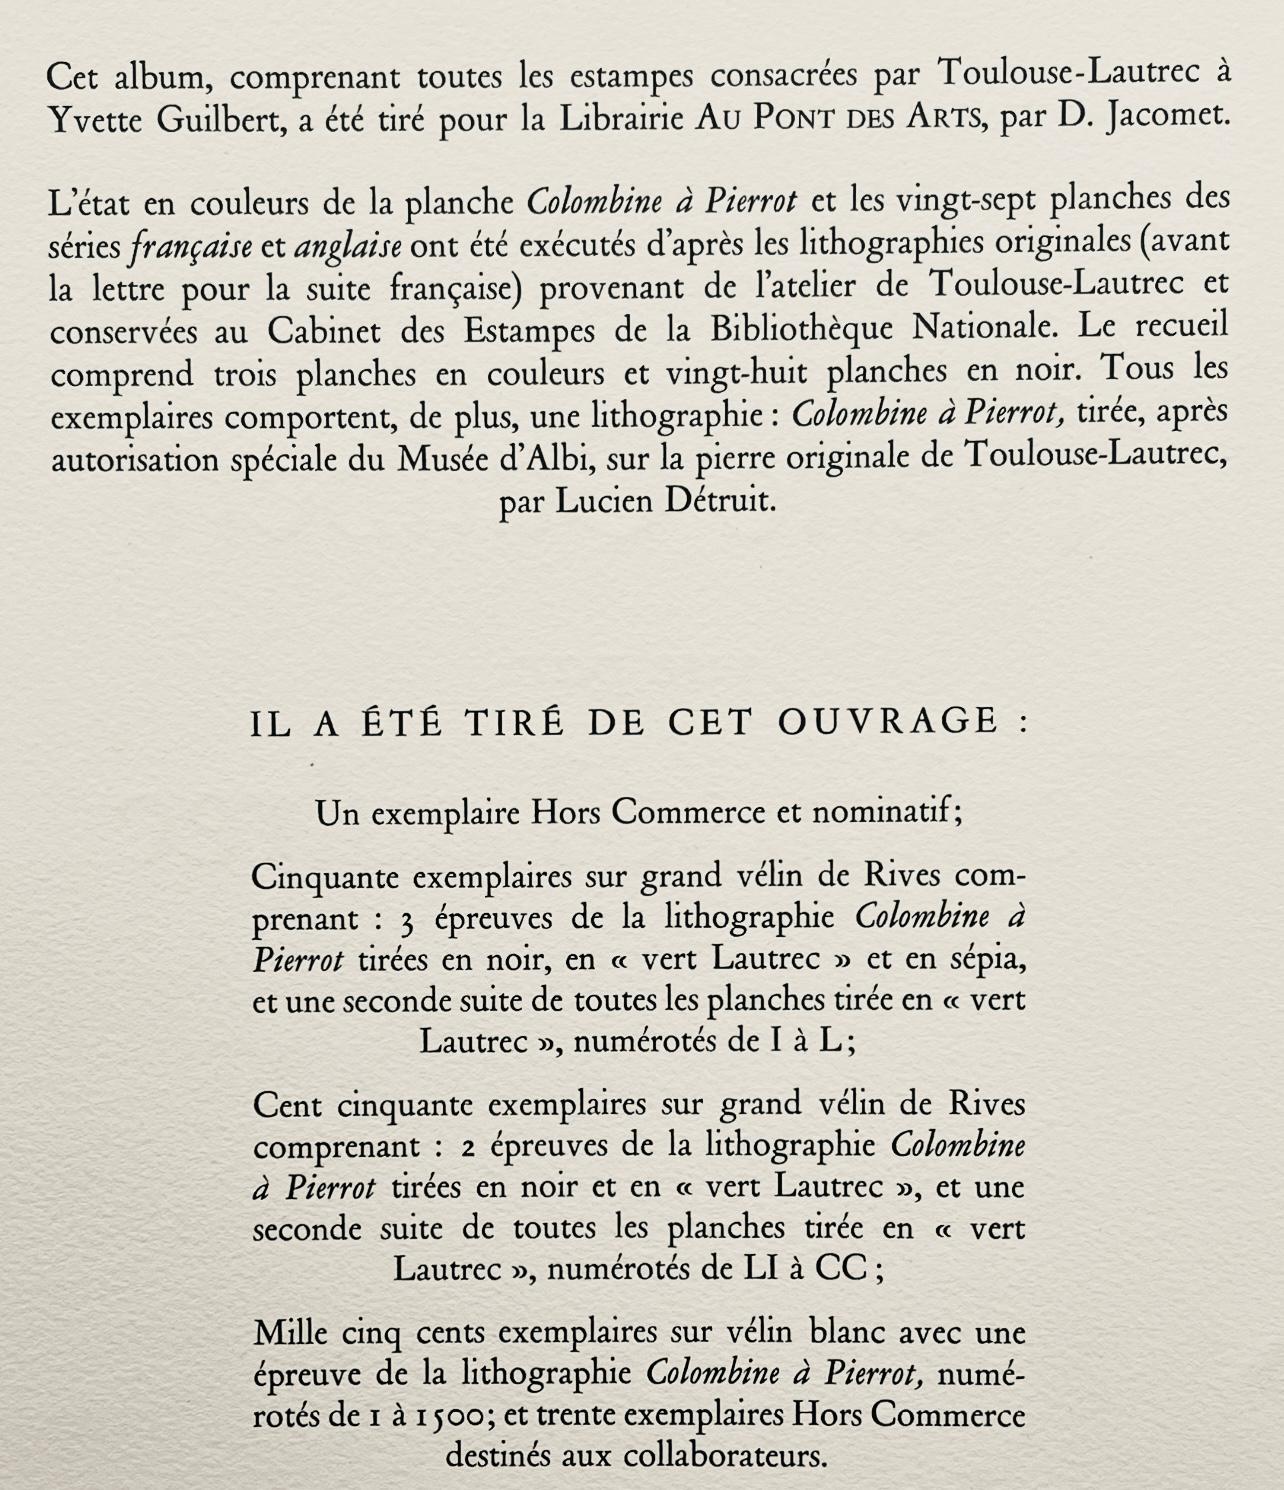 Toulouse-Lautrec, Composition, Yvette Guilbert vue par Toulouse-Lautrec (after) For Sale 5